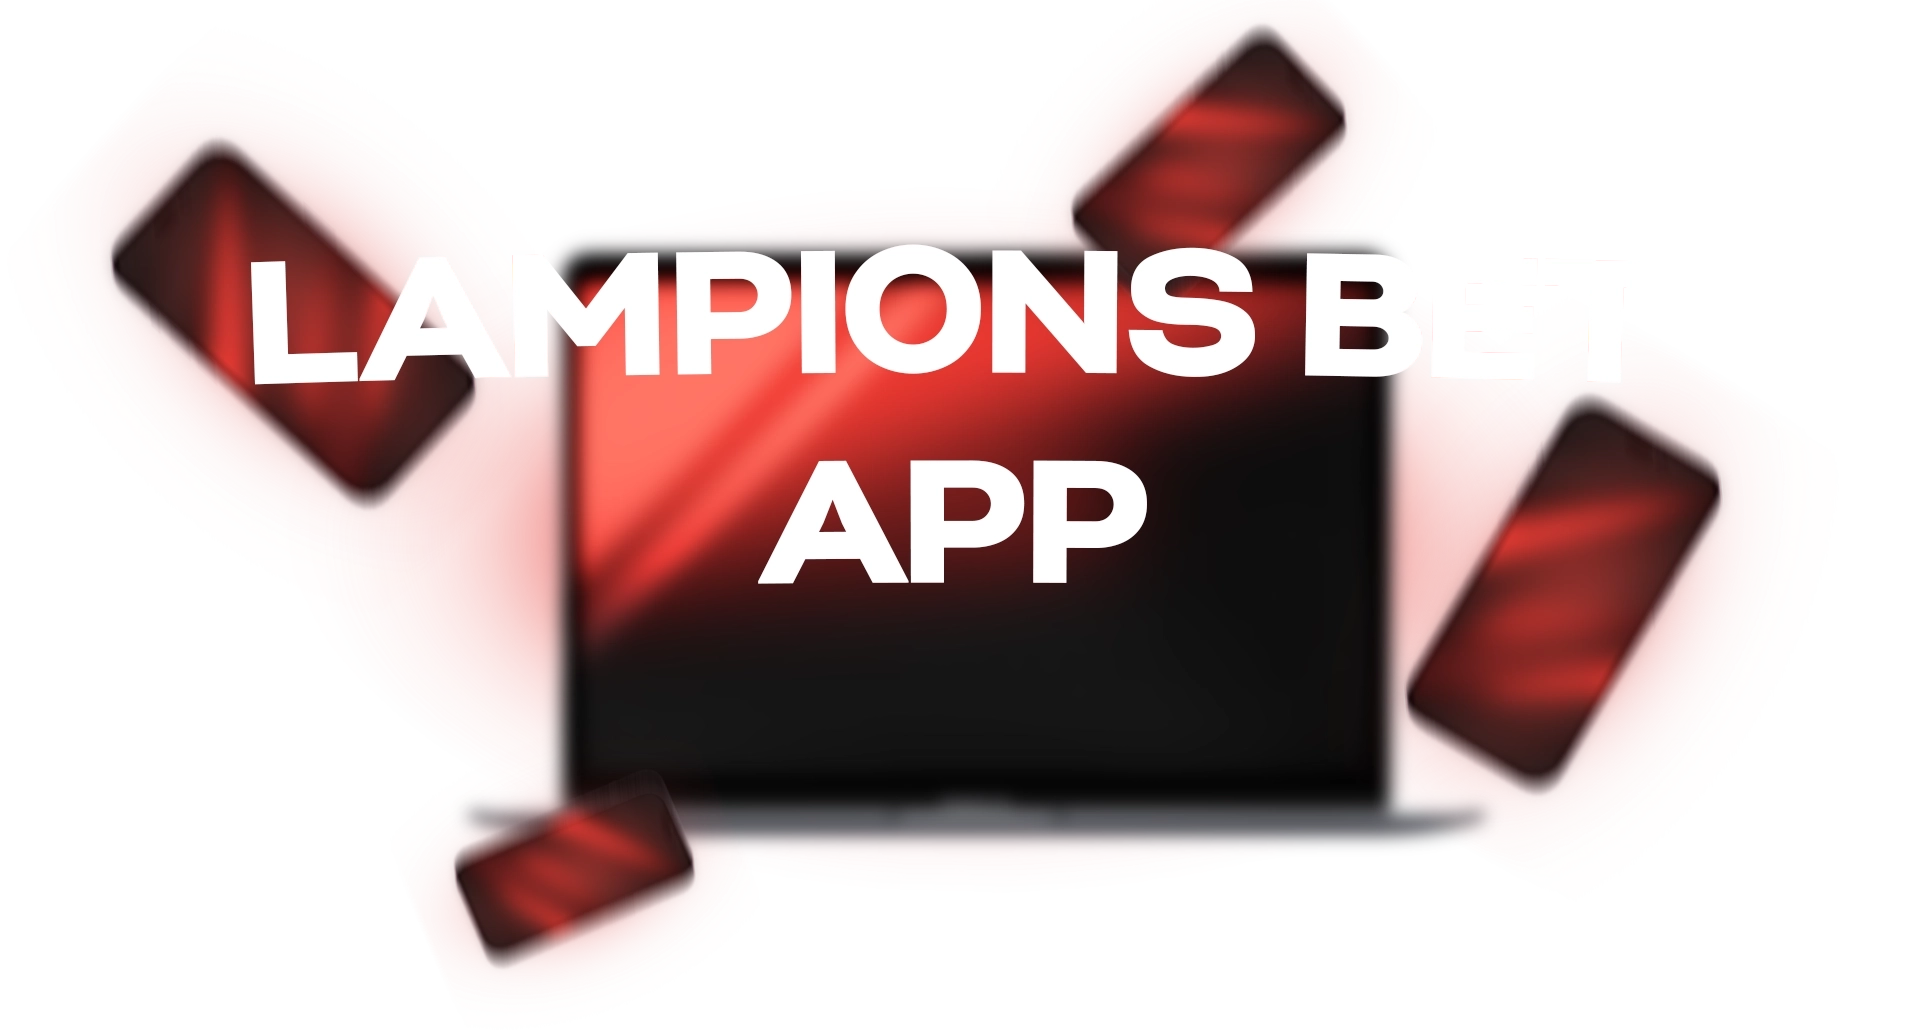 Lampions-Bet-App-Principal